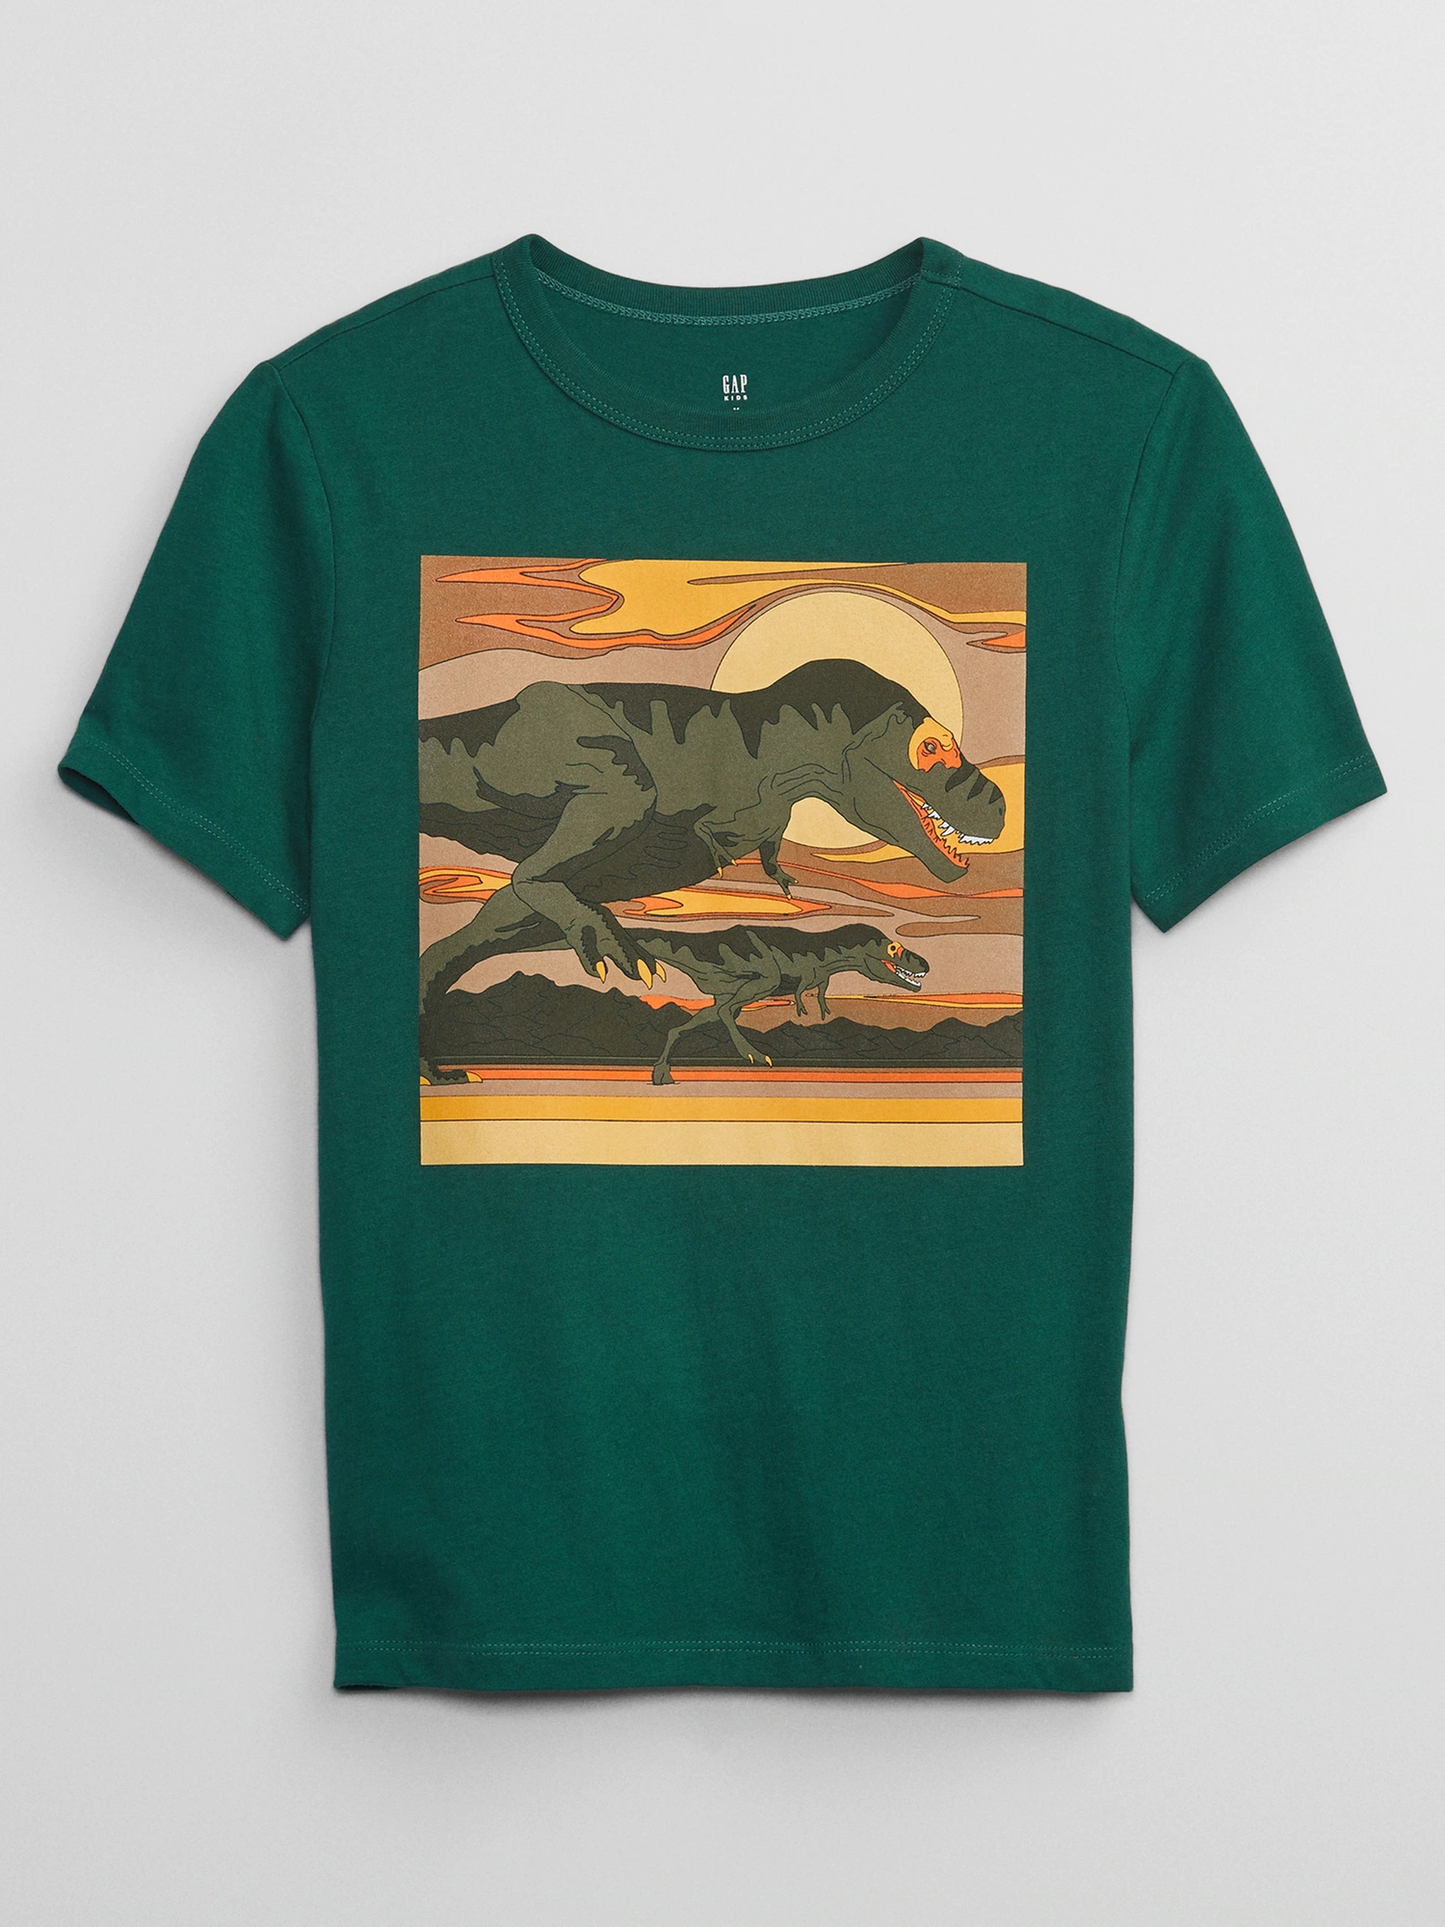 Camiseta Gap niño dinosaurios 5-14